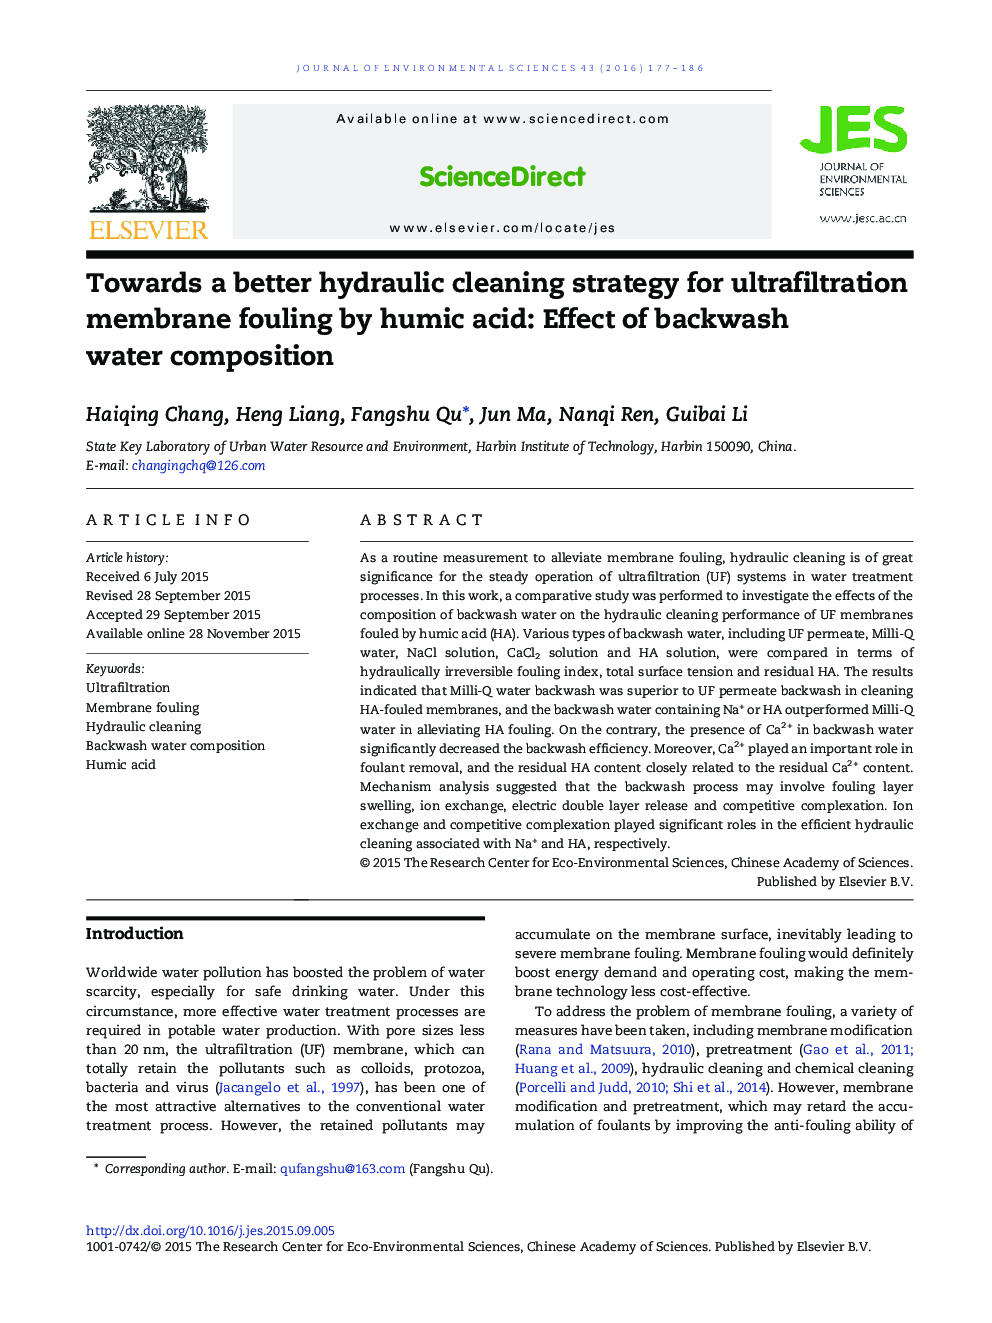 به سوی یک روش استحکام هیدرولیکی بهتر برای فوران کردن غشاء اولترافیلتراسیون با اسید هومیک: اثر ترکیب آب پشتی 